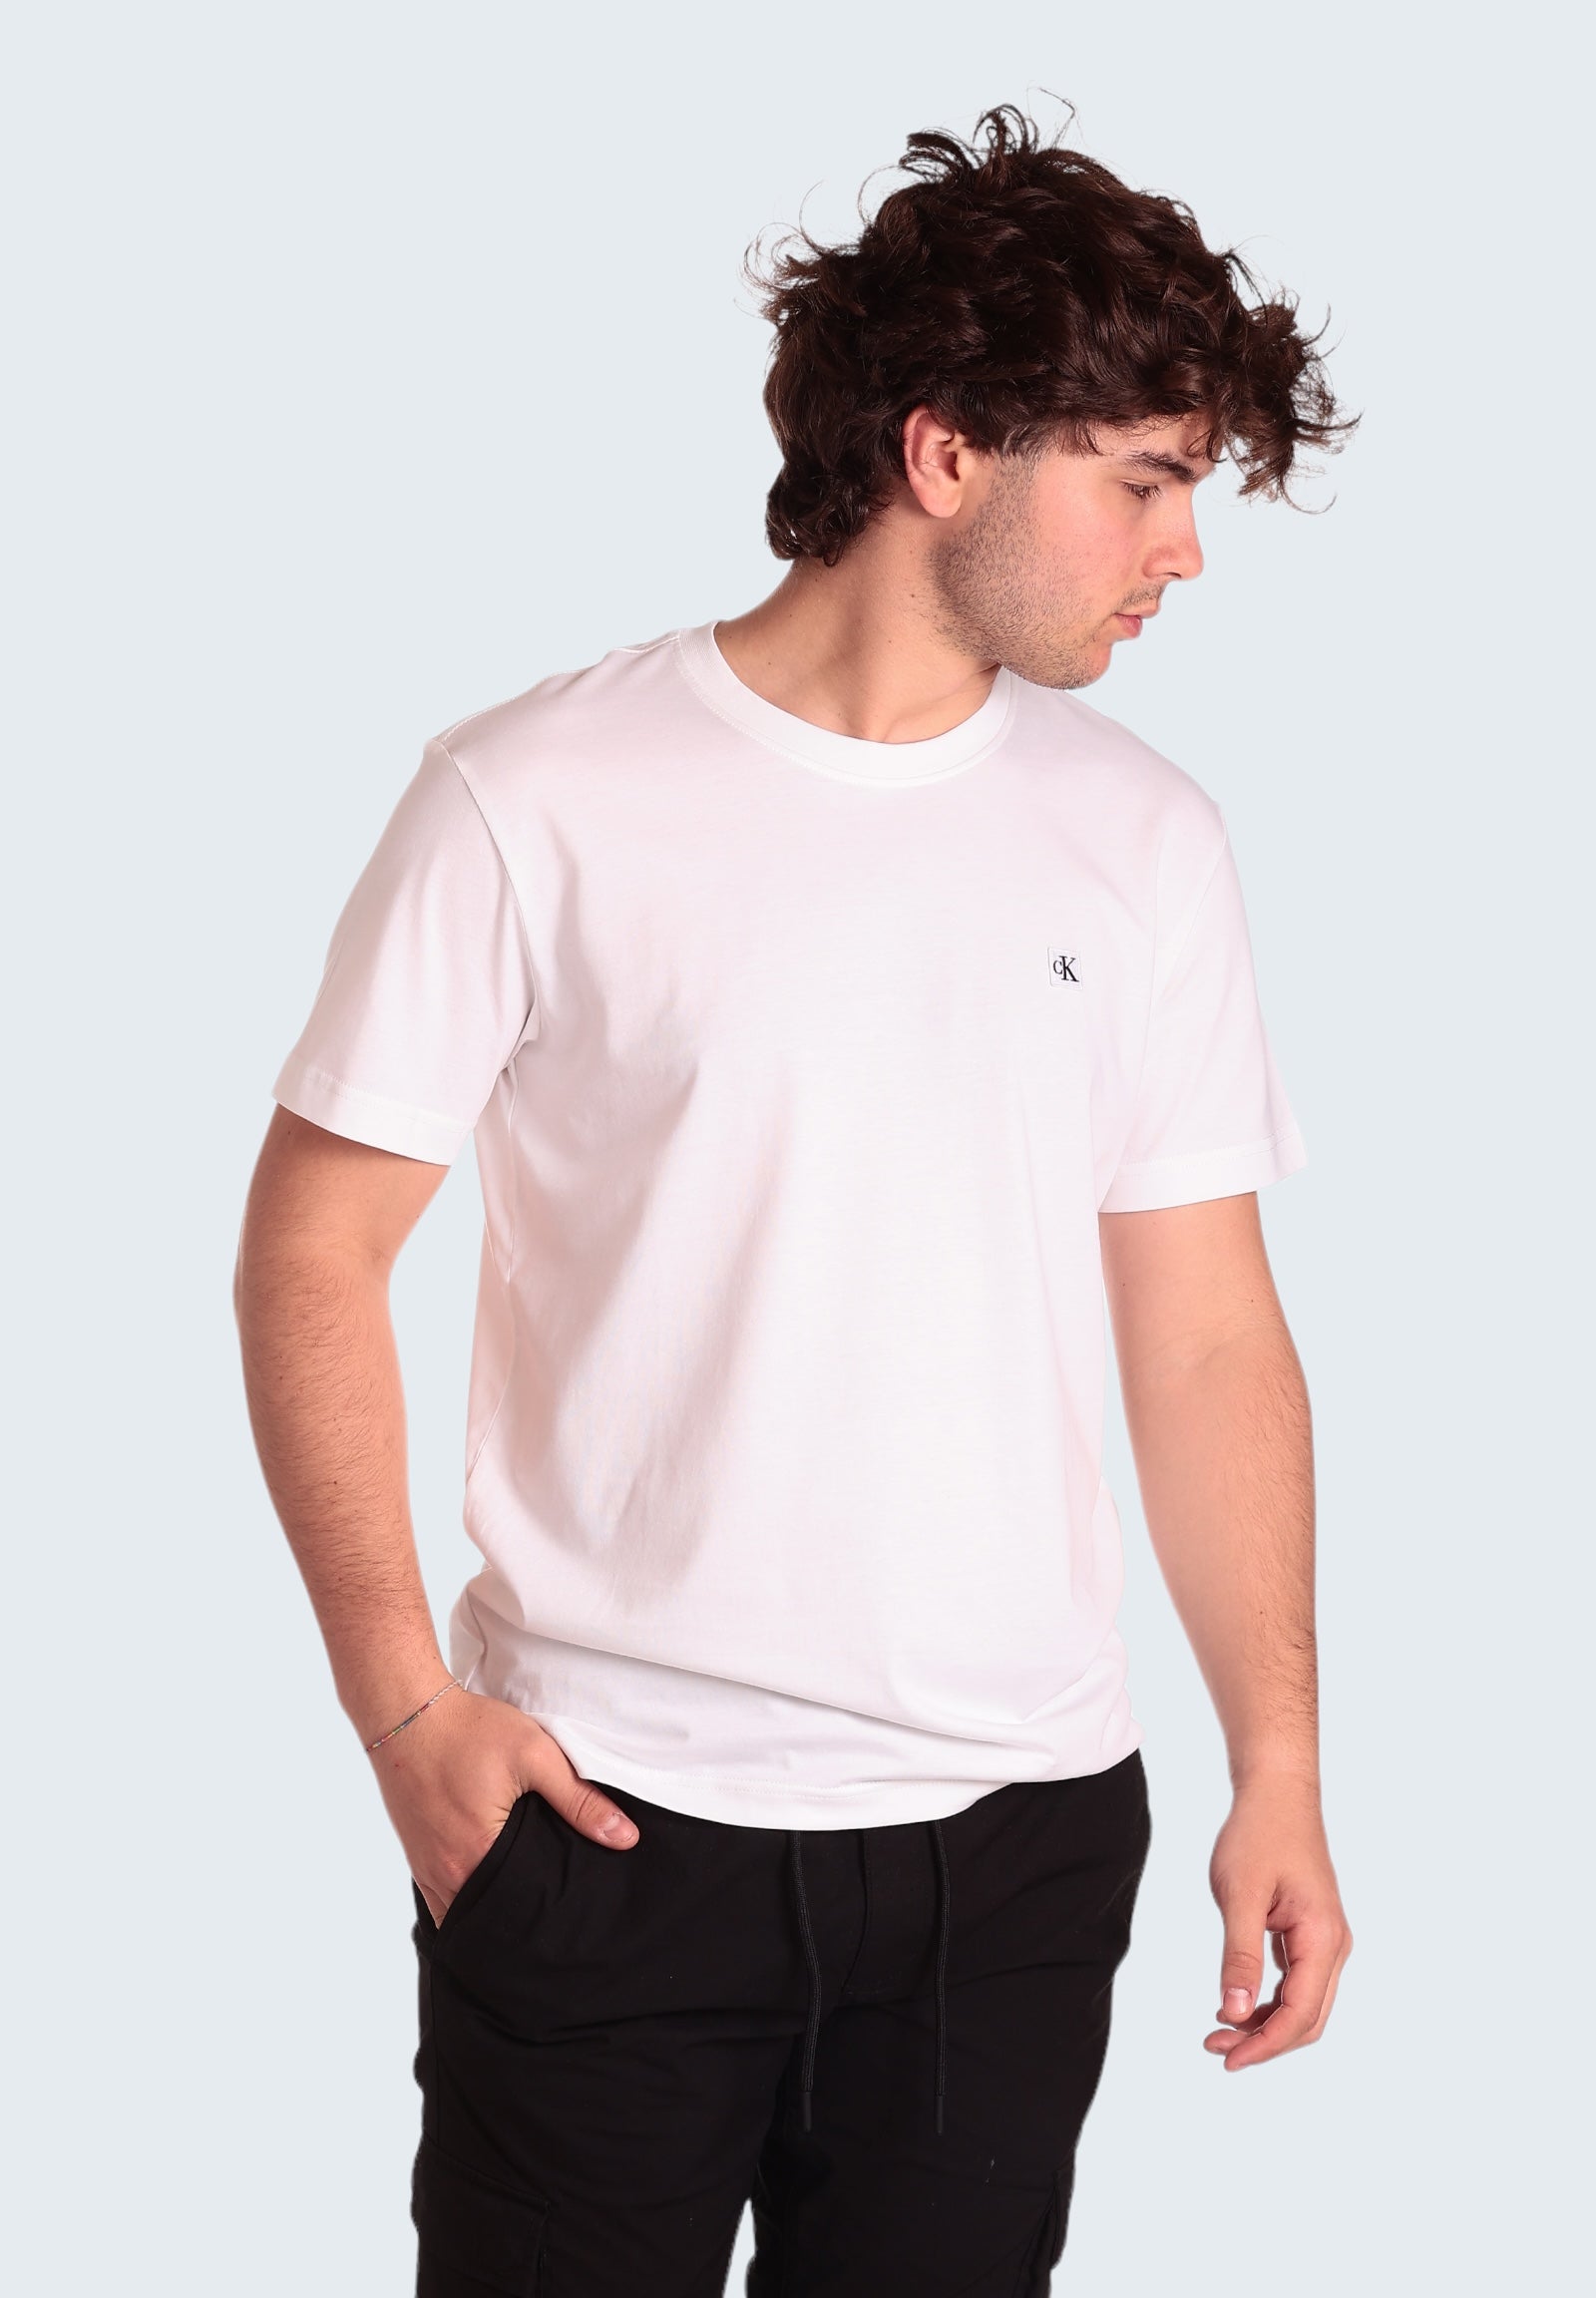 T-Shirt J30j325268 Bright White